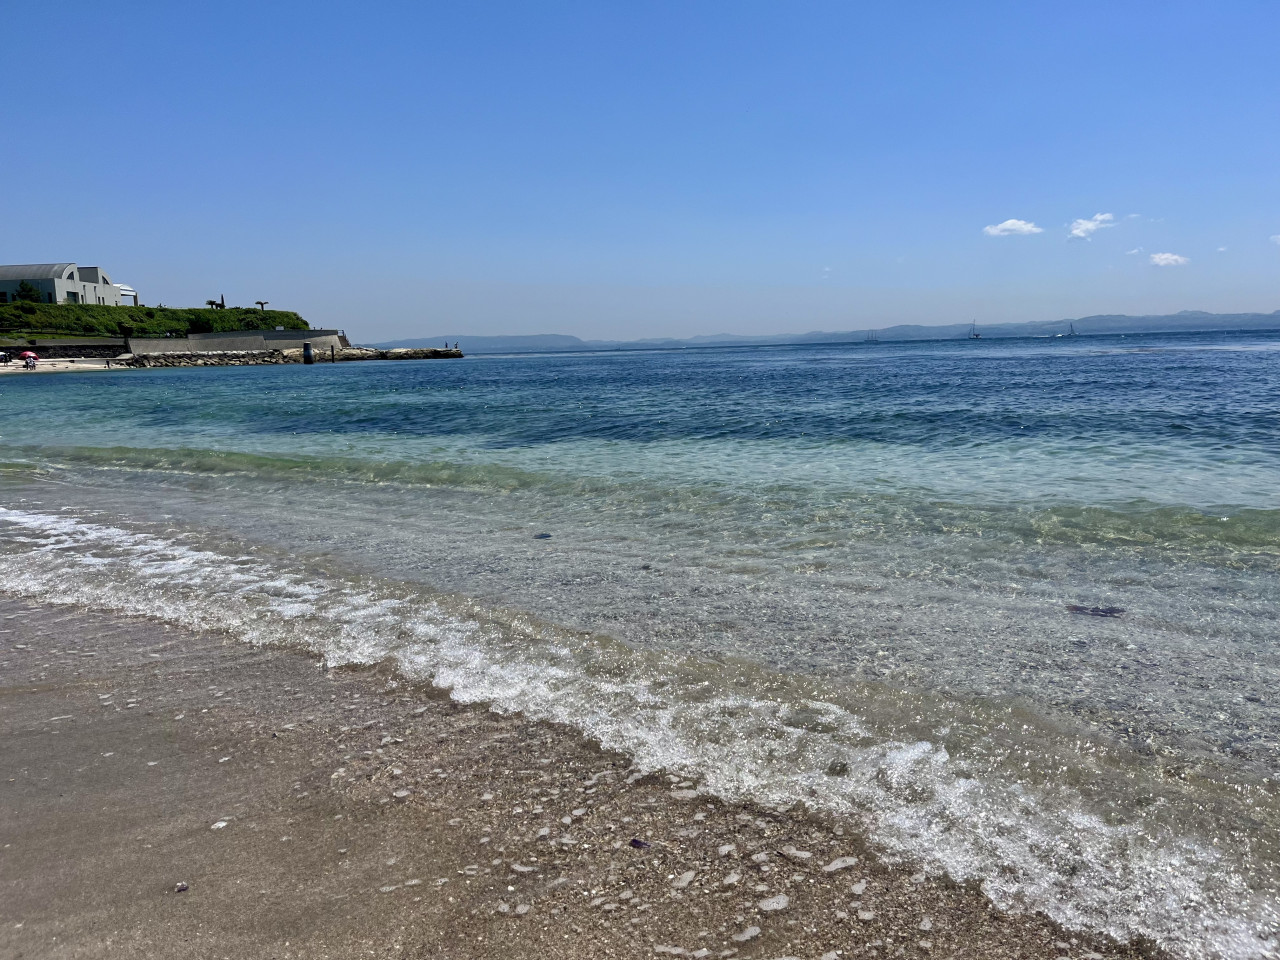 三浦半島にあり、観音崎海水浴場の隣にあるたたら浜。白い砂浜と磯遊びができる岩場があるキレイな海です。昭和29年、初代ゴジラがこの浜辺に上陸したことで知られている場所でもあります。